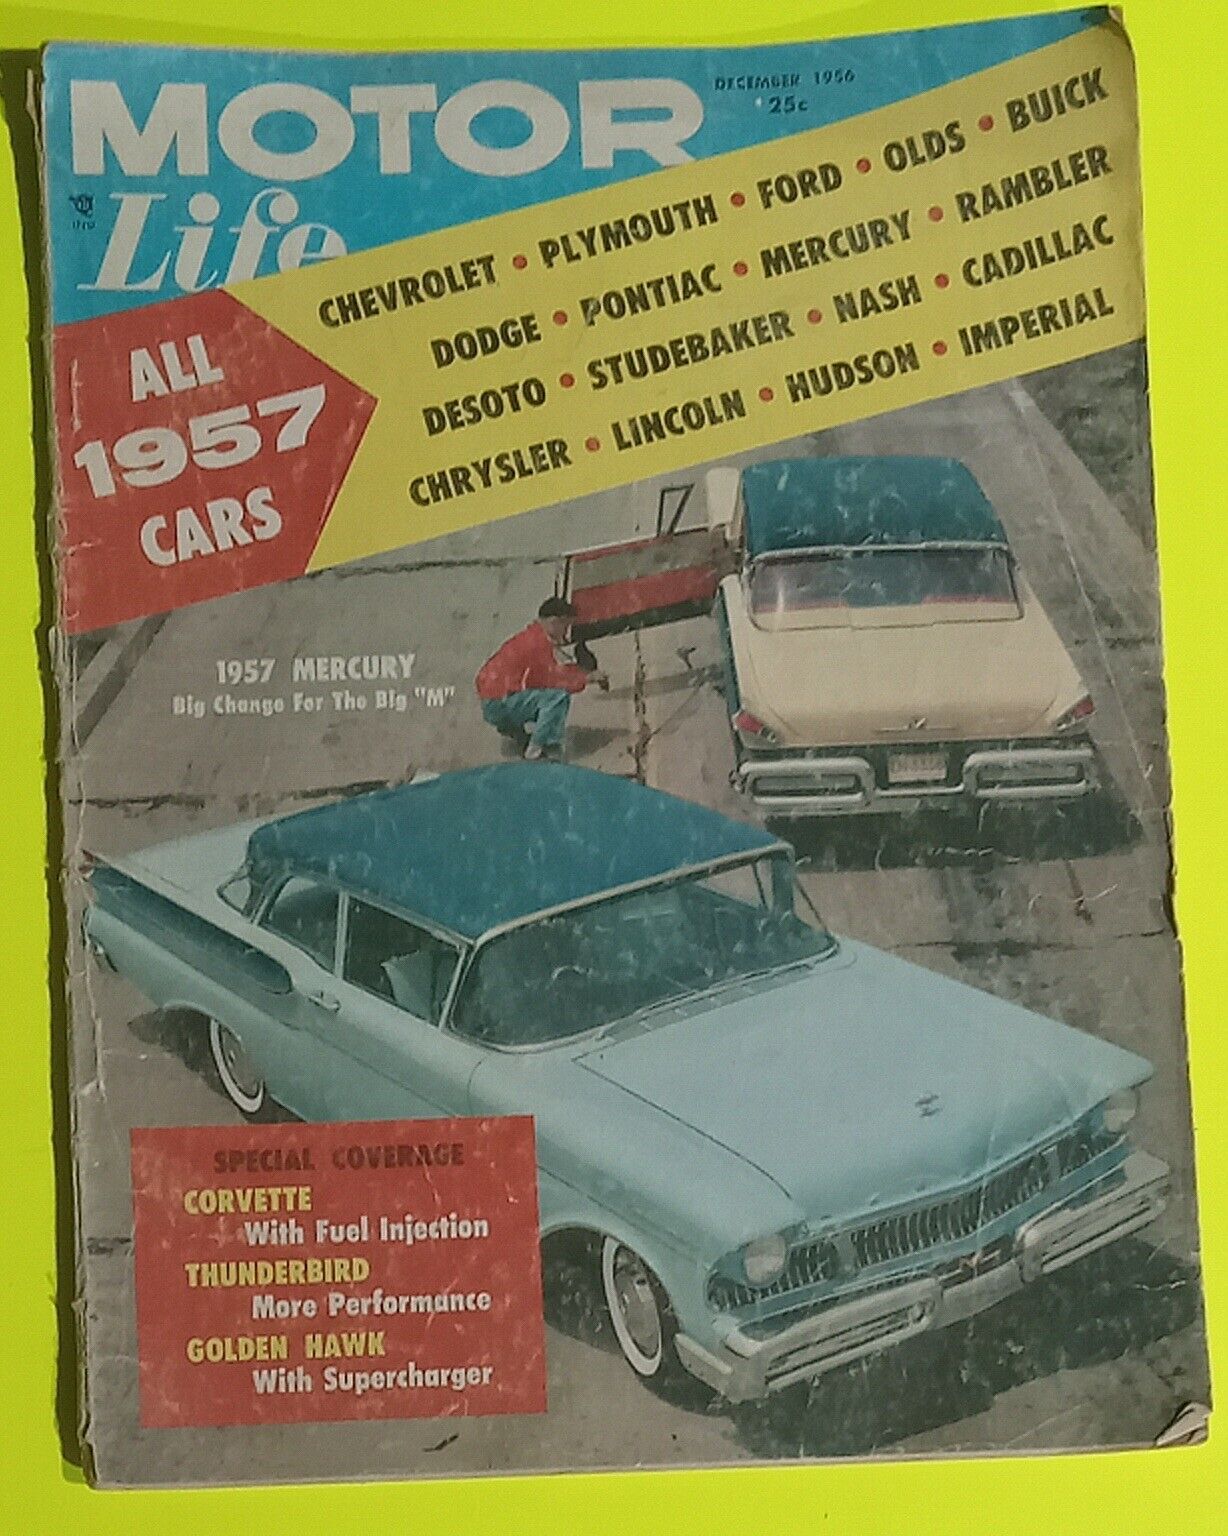 Motor Life December 1956